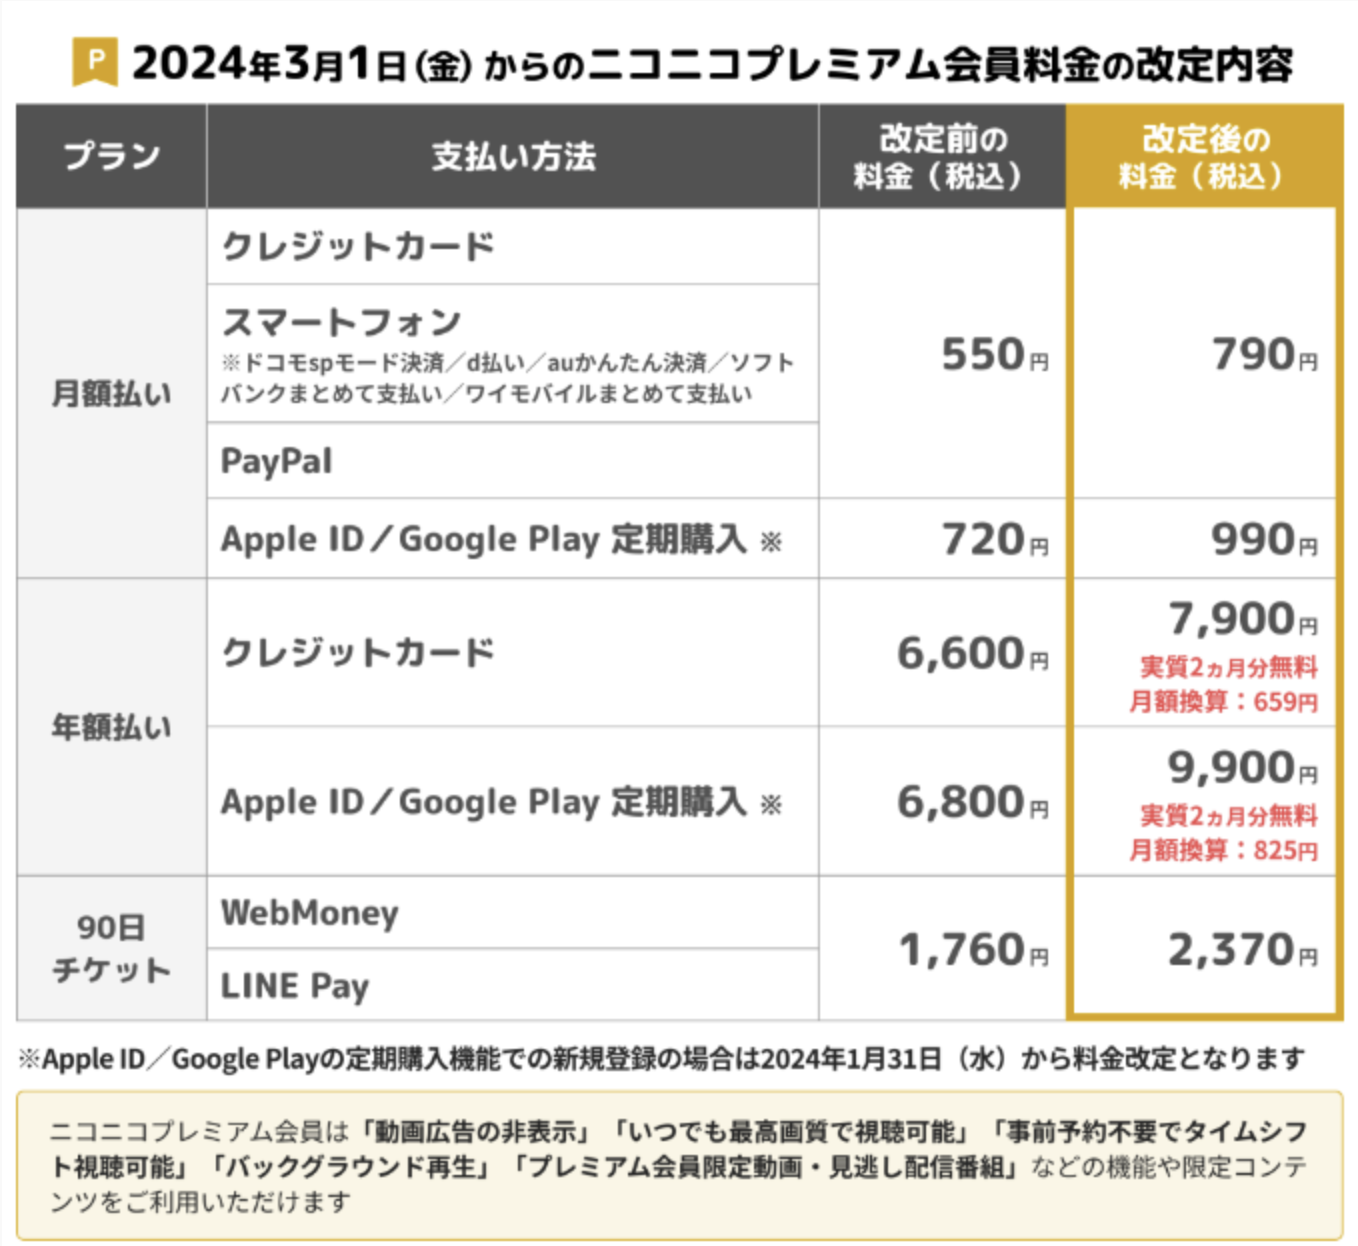 日本 niconico 弹幕网明年 3 月取消“经济模式”：免费用户可看 720p 视频、高级会员涨价